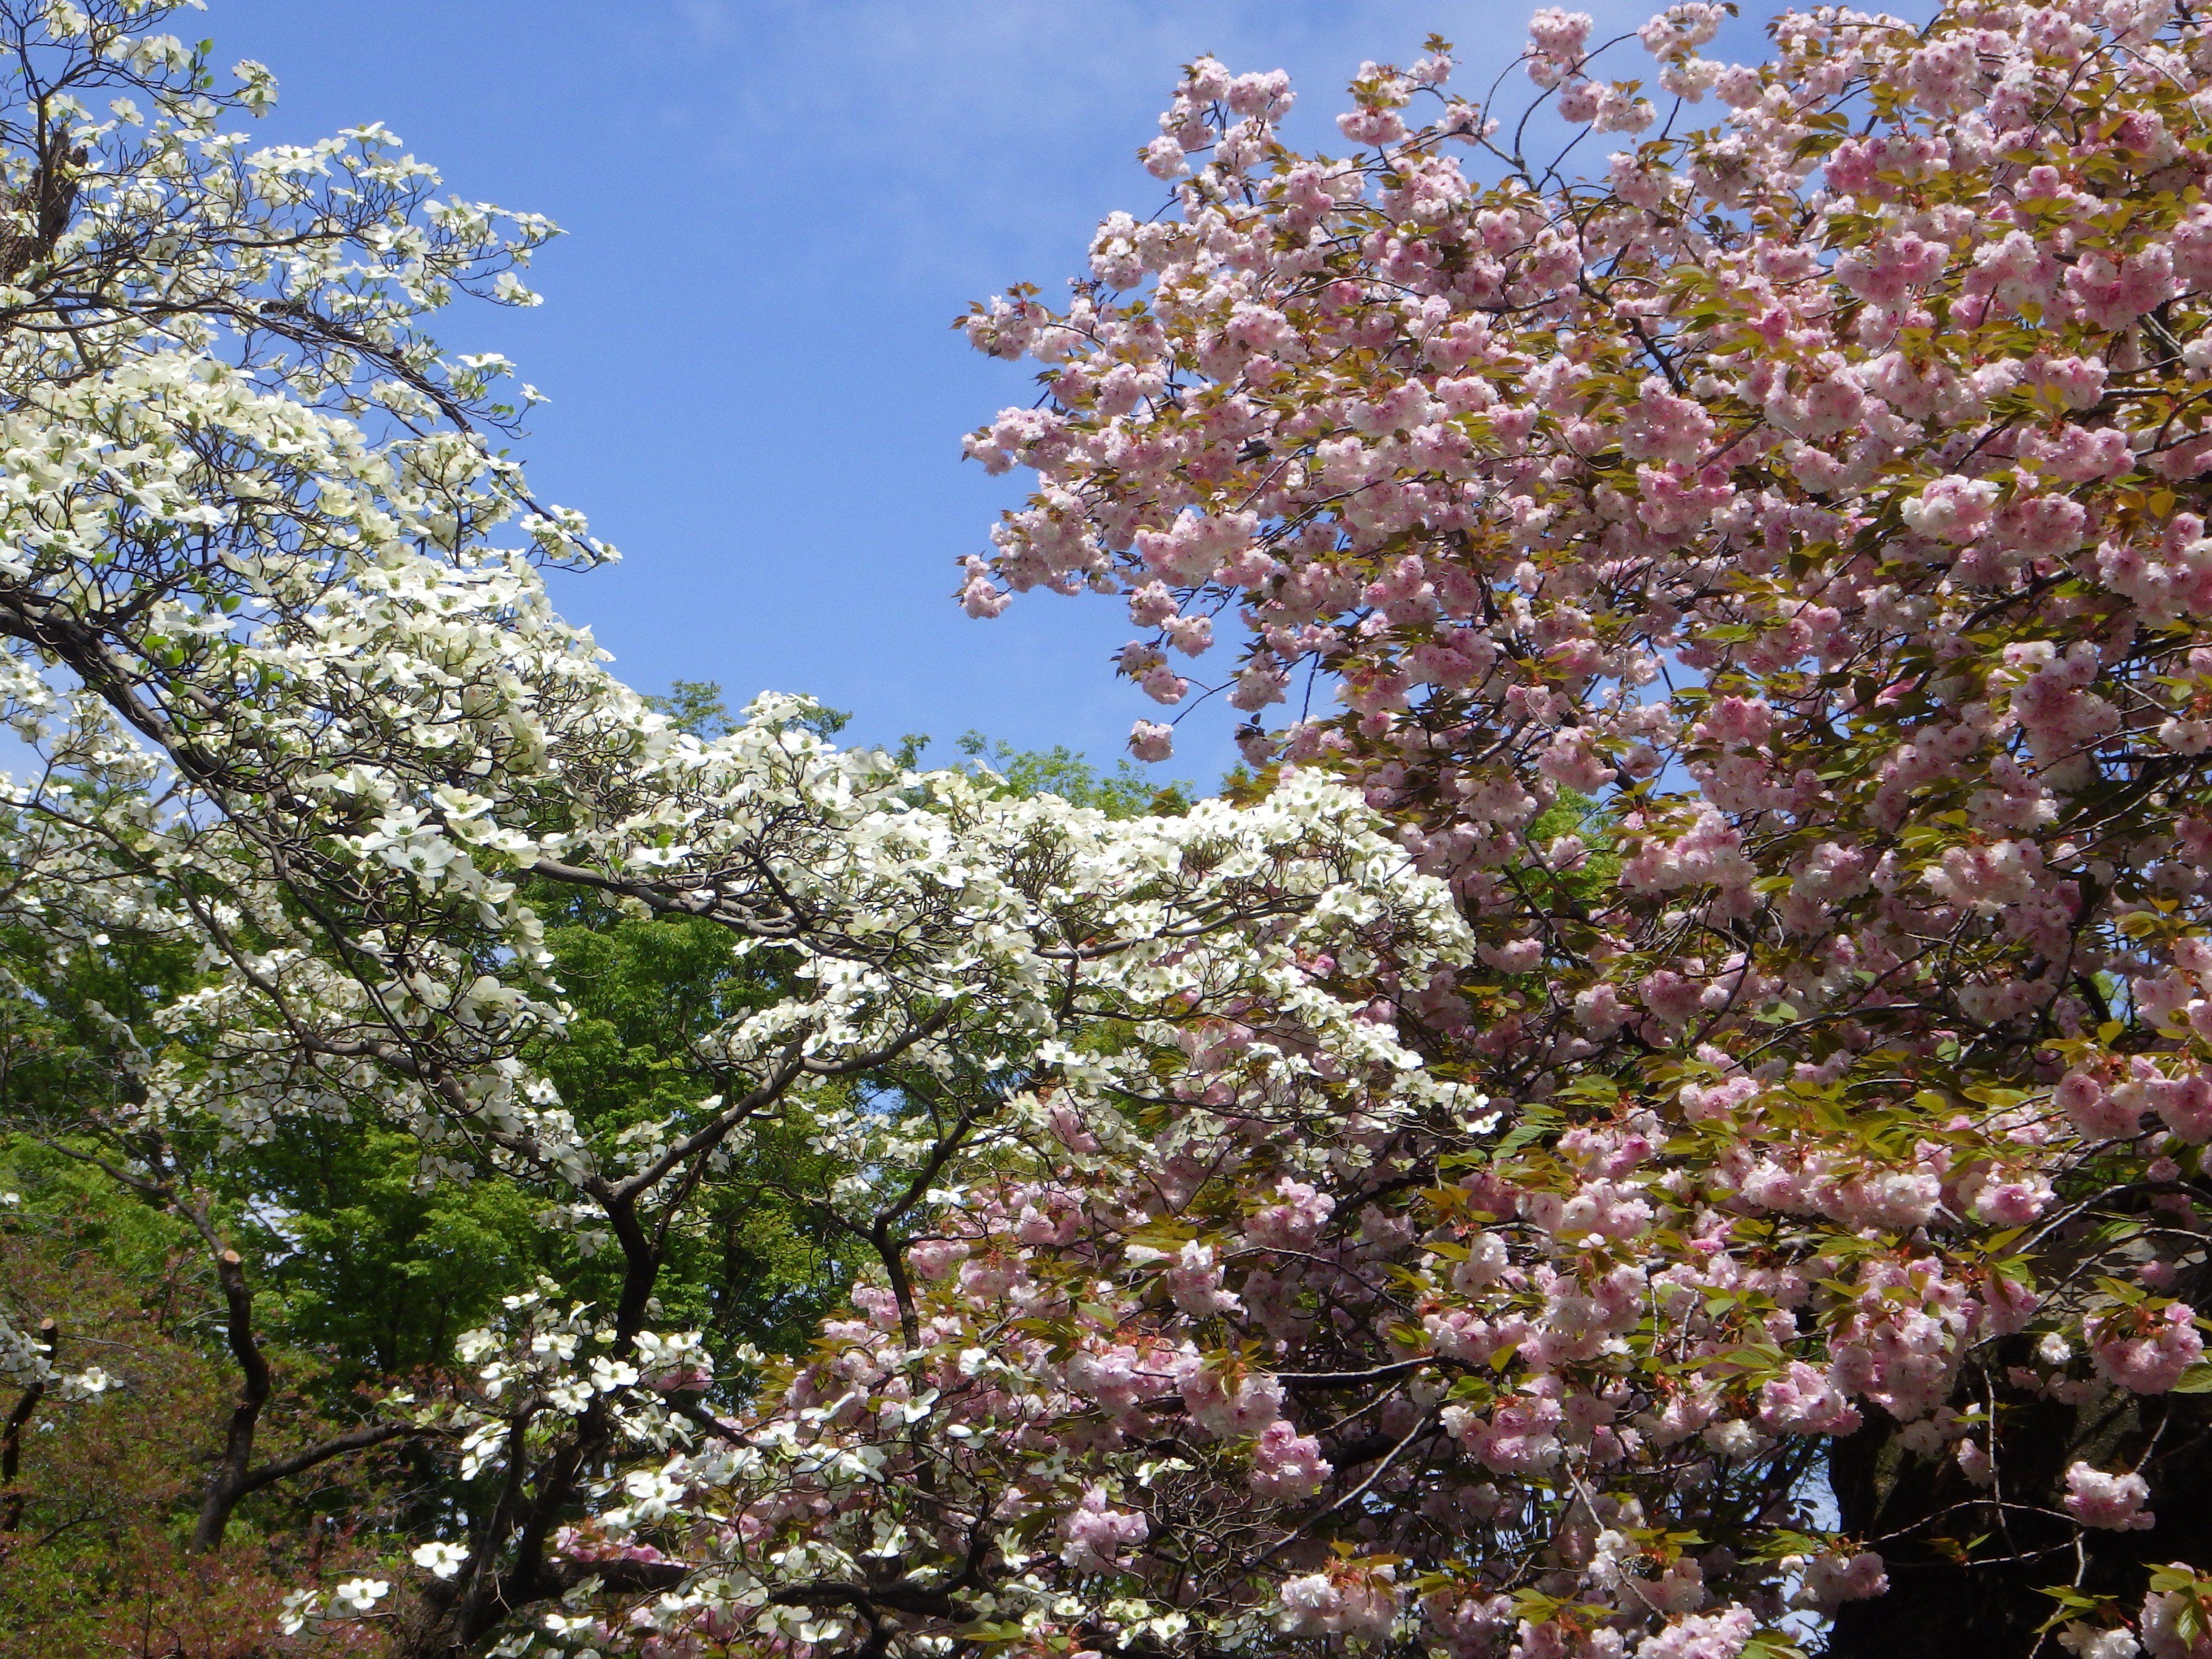 井の頭自然文化園 公式 園内のハナミズキも満開です ハナミズキは庭木や街路樹としても非常に人気がありますが 元々は桜のお礼としてアメリカから日本へ贈られてきた樹木です 園内では紅白ともに咲いていて 白ハナミズキは場所により サトザクラの